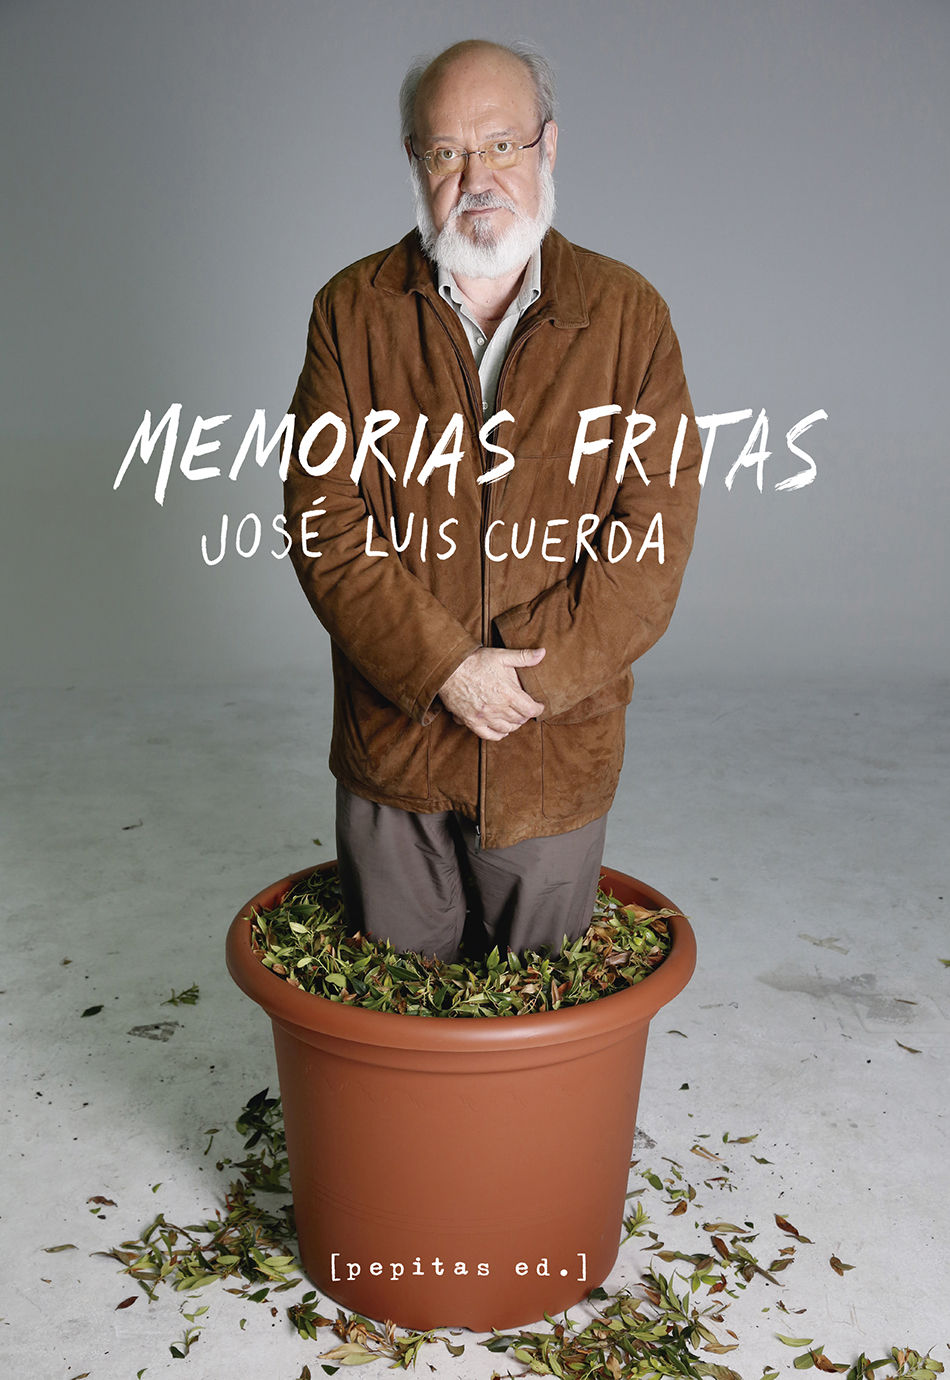 «Memorias fritas», el legado de José Luis Cuerda